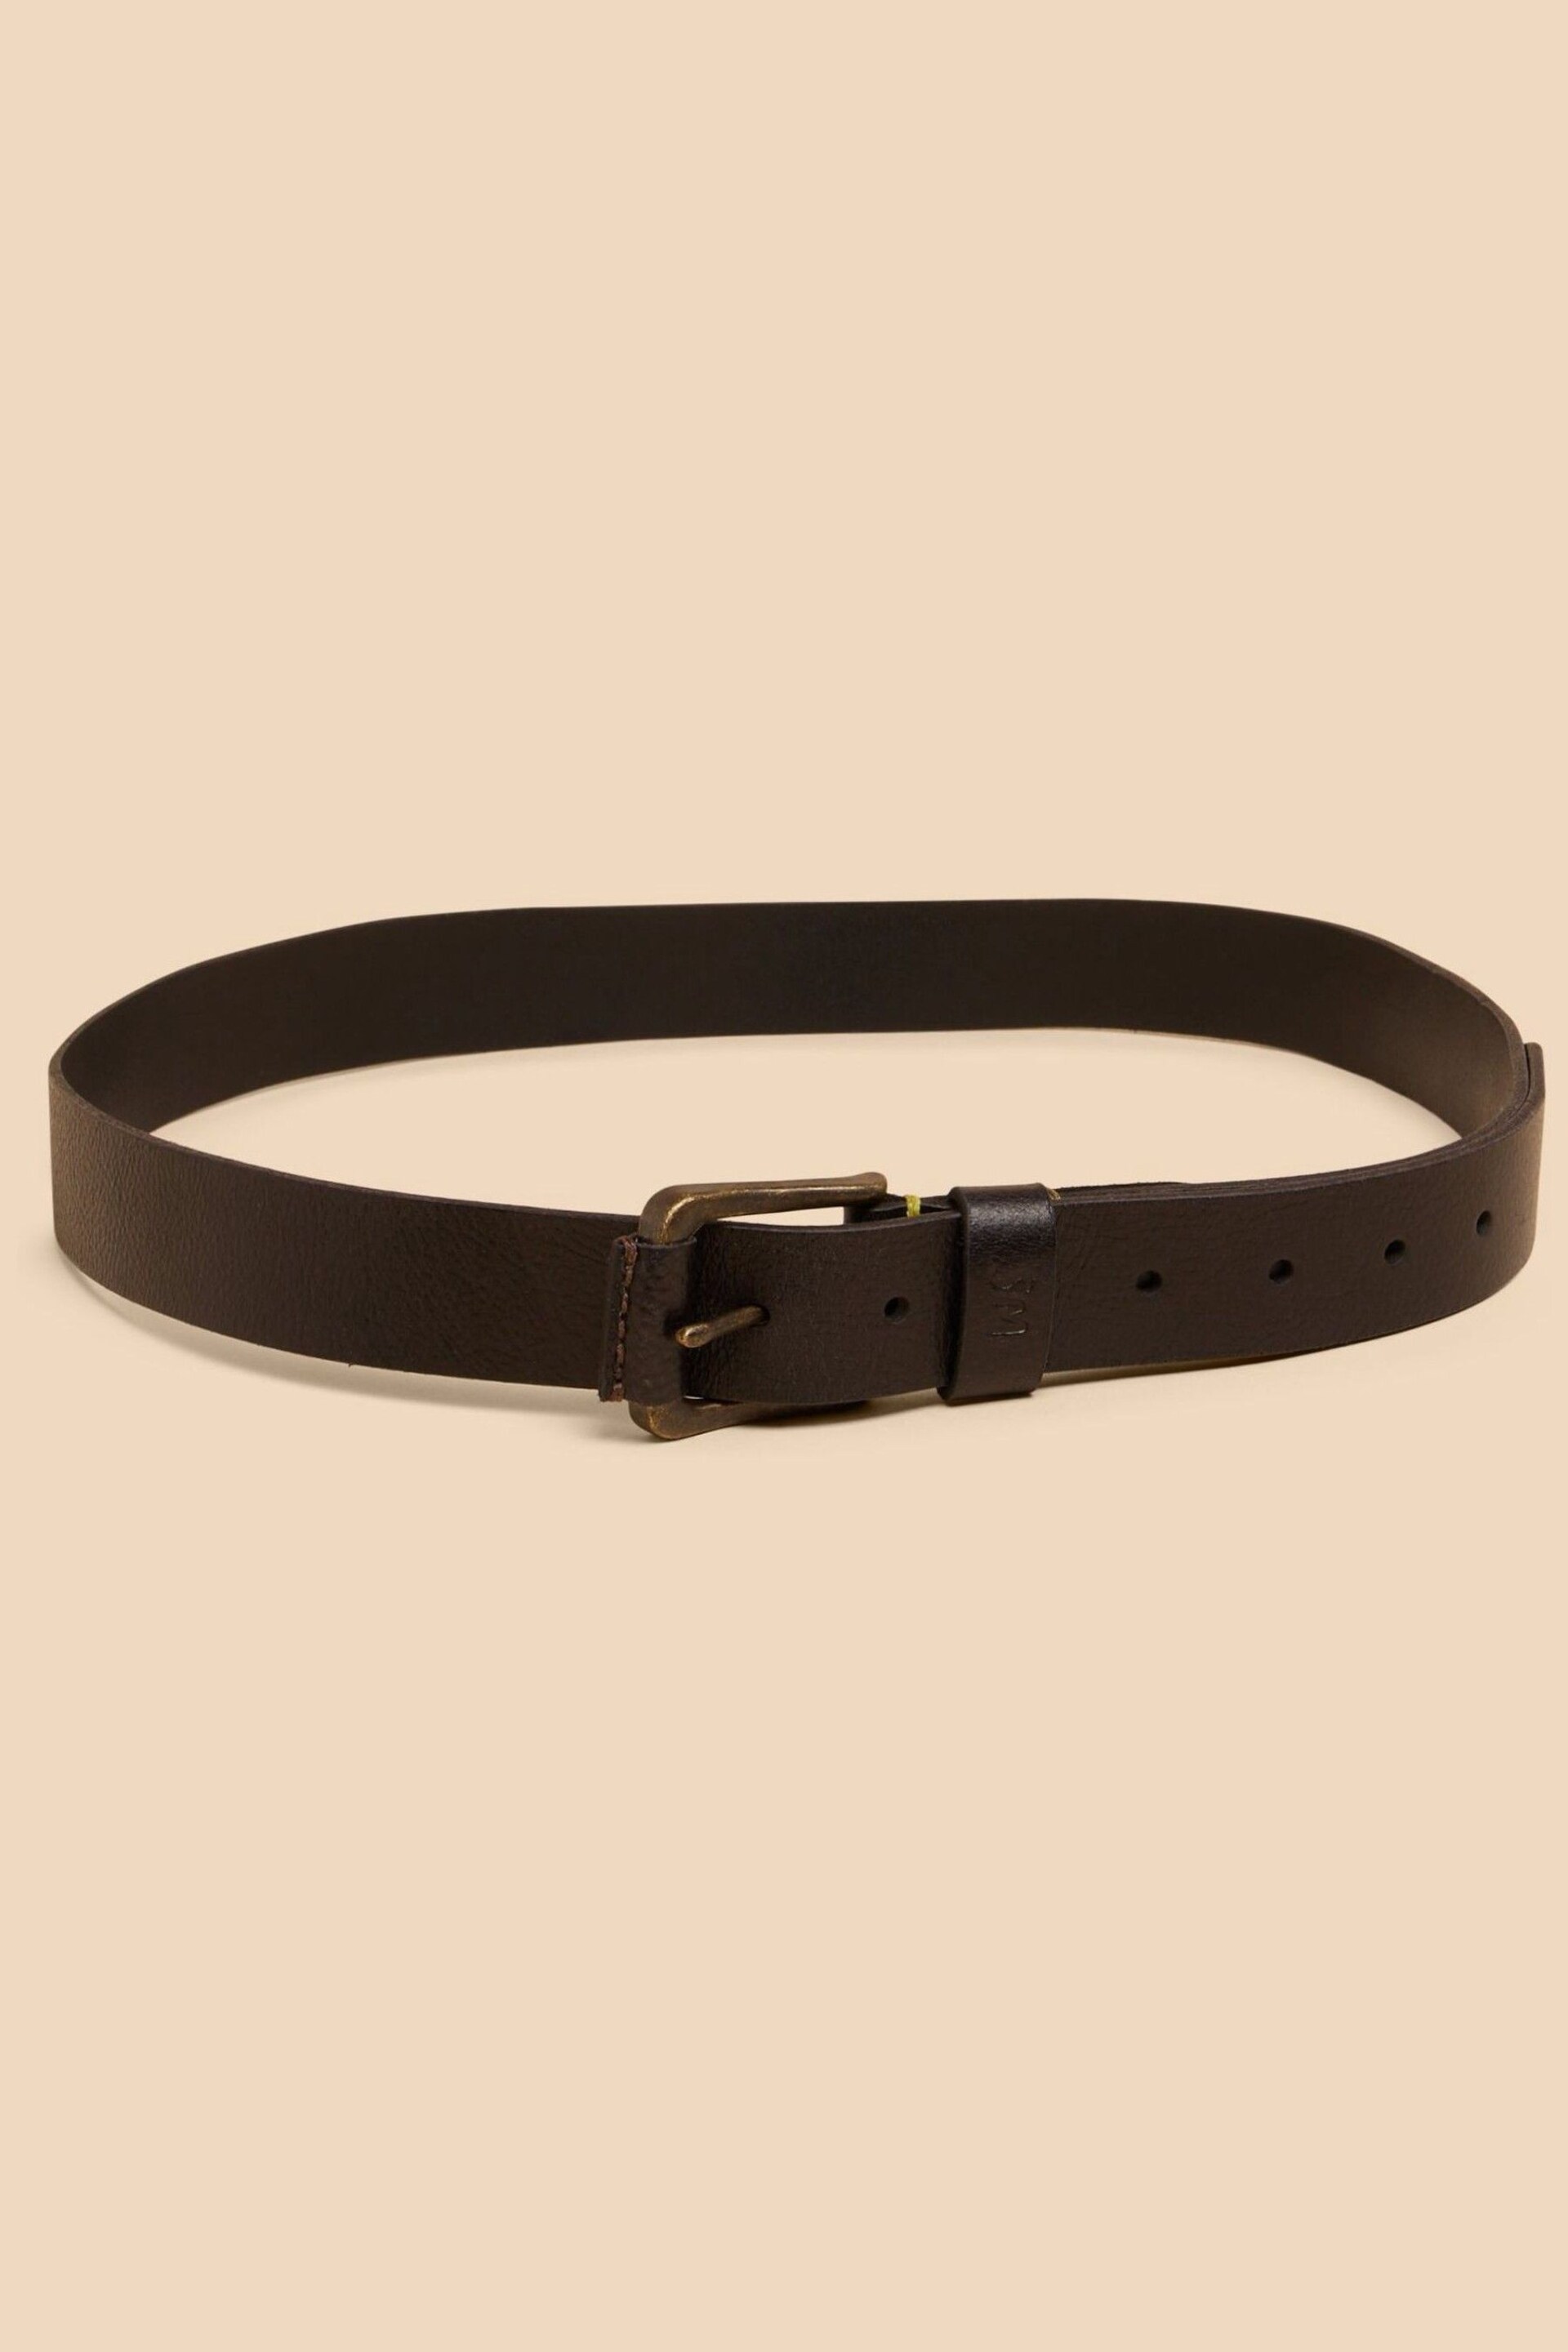 White Stuff Black Leather Belt - Image 2 of 3